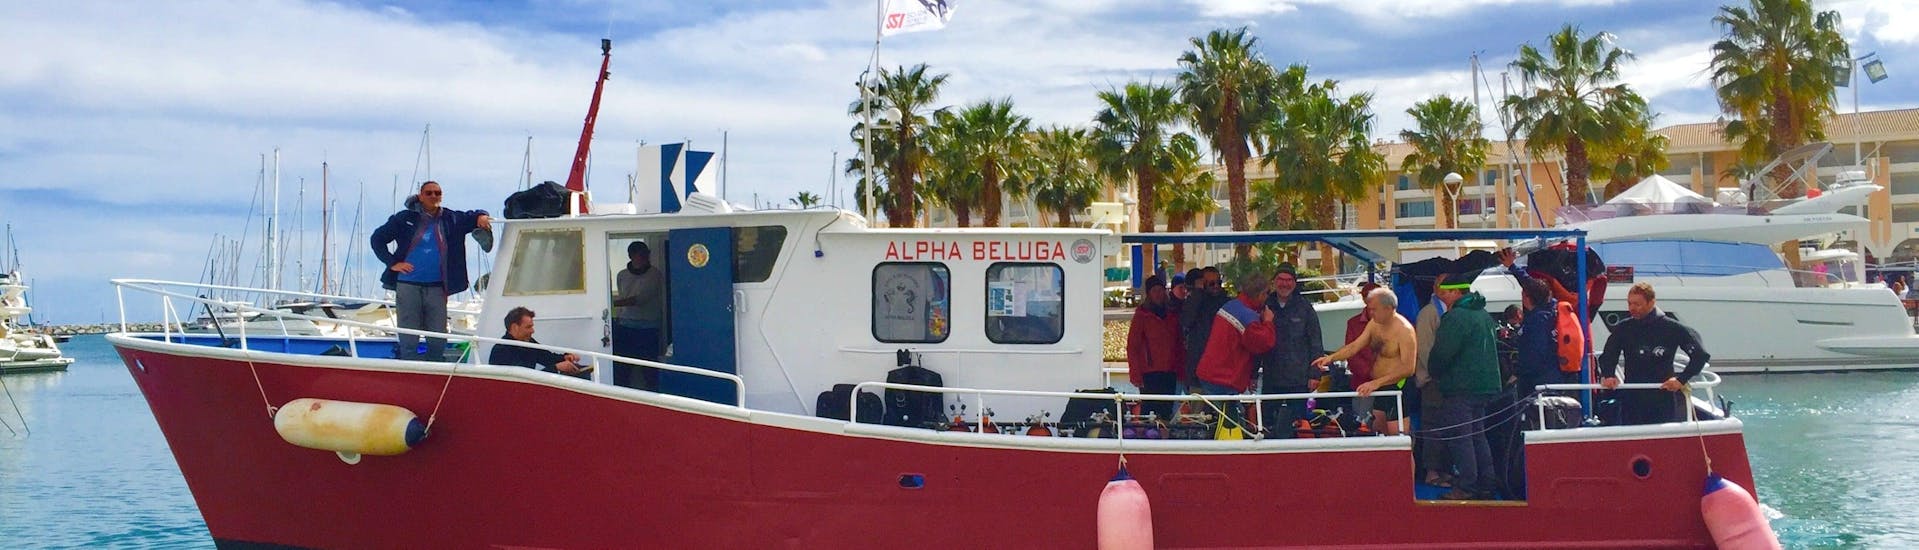 Le bateau d'Alpha Beluga Plongée dans le port de Fréjus prêt à se diriger vers l'un des sites de plongée autour du massif de l'Estérel où se déroulent des baptêmes de plongée et des cours de plongée.